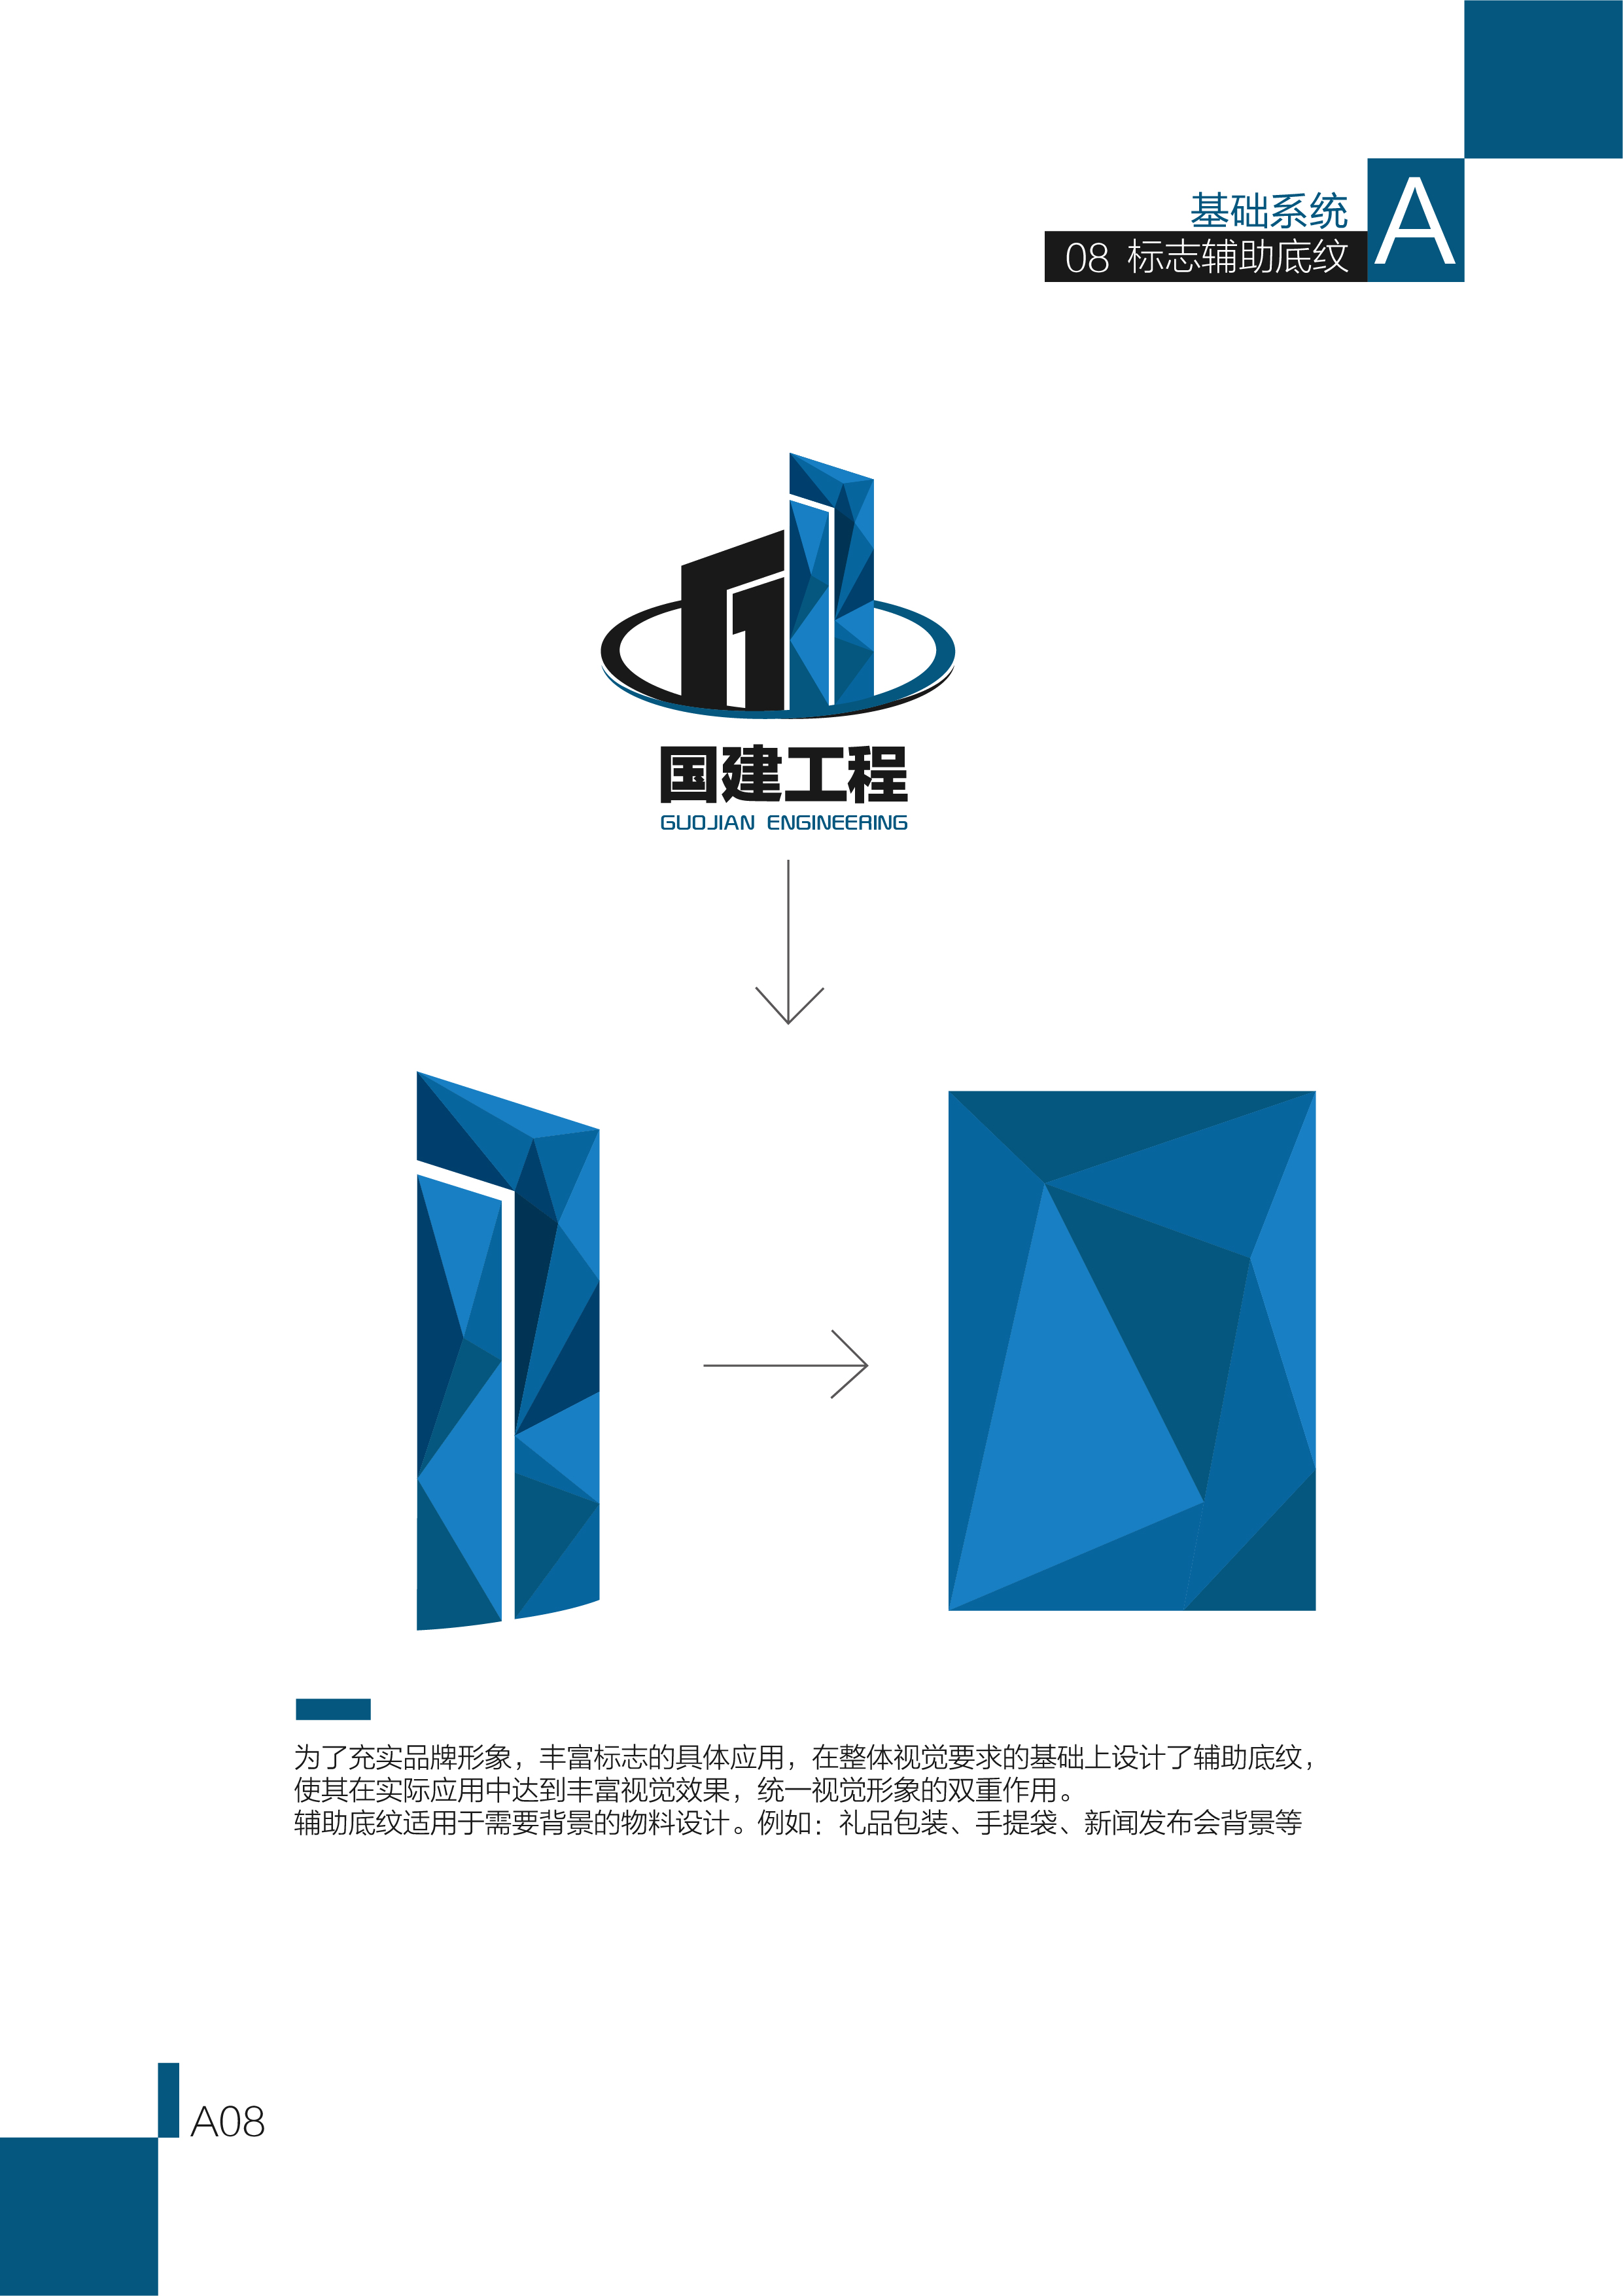 国建(广州)工程建设有限公司logo设计及vi设计